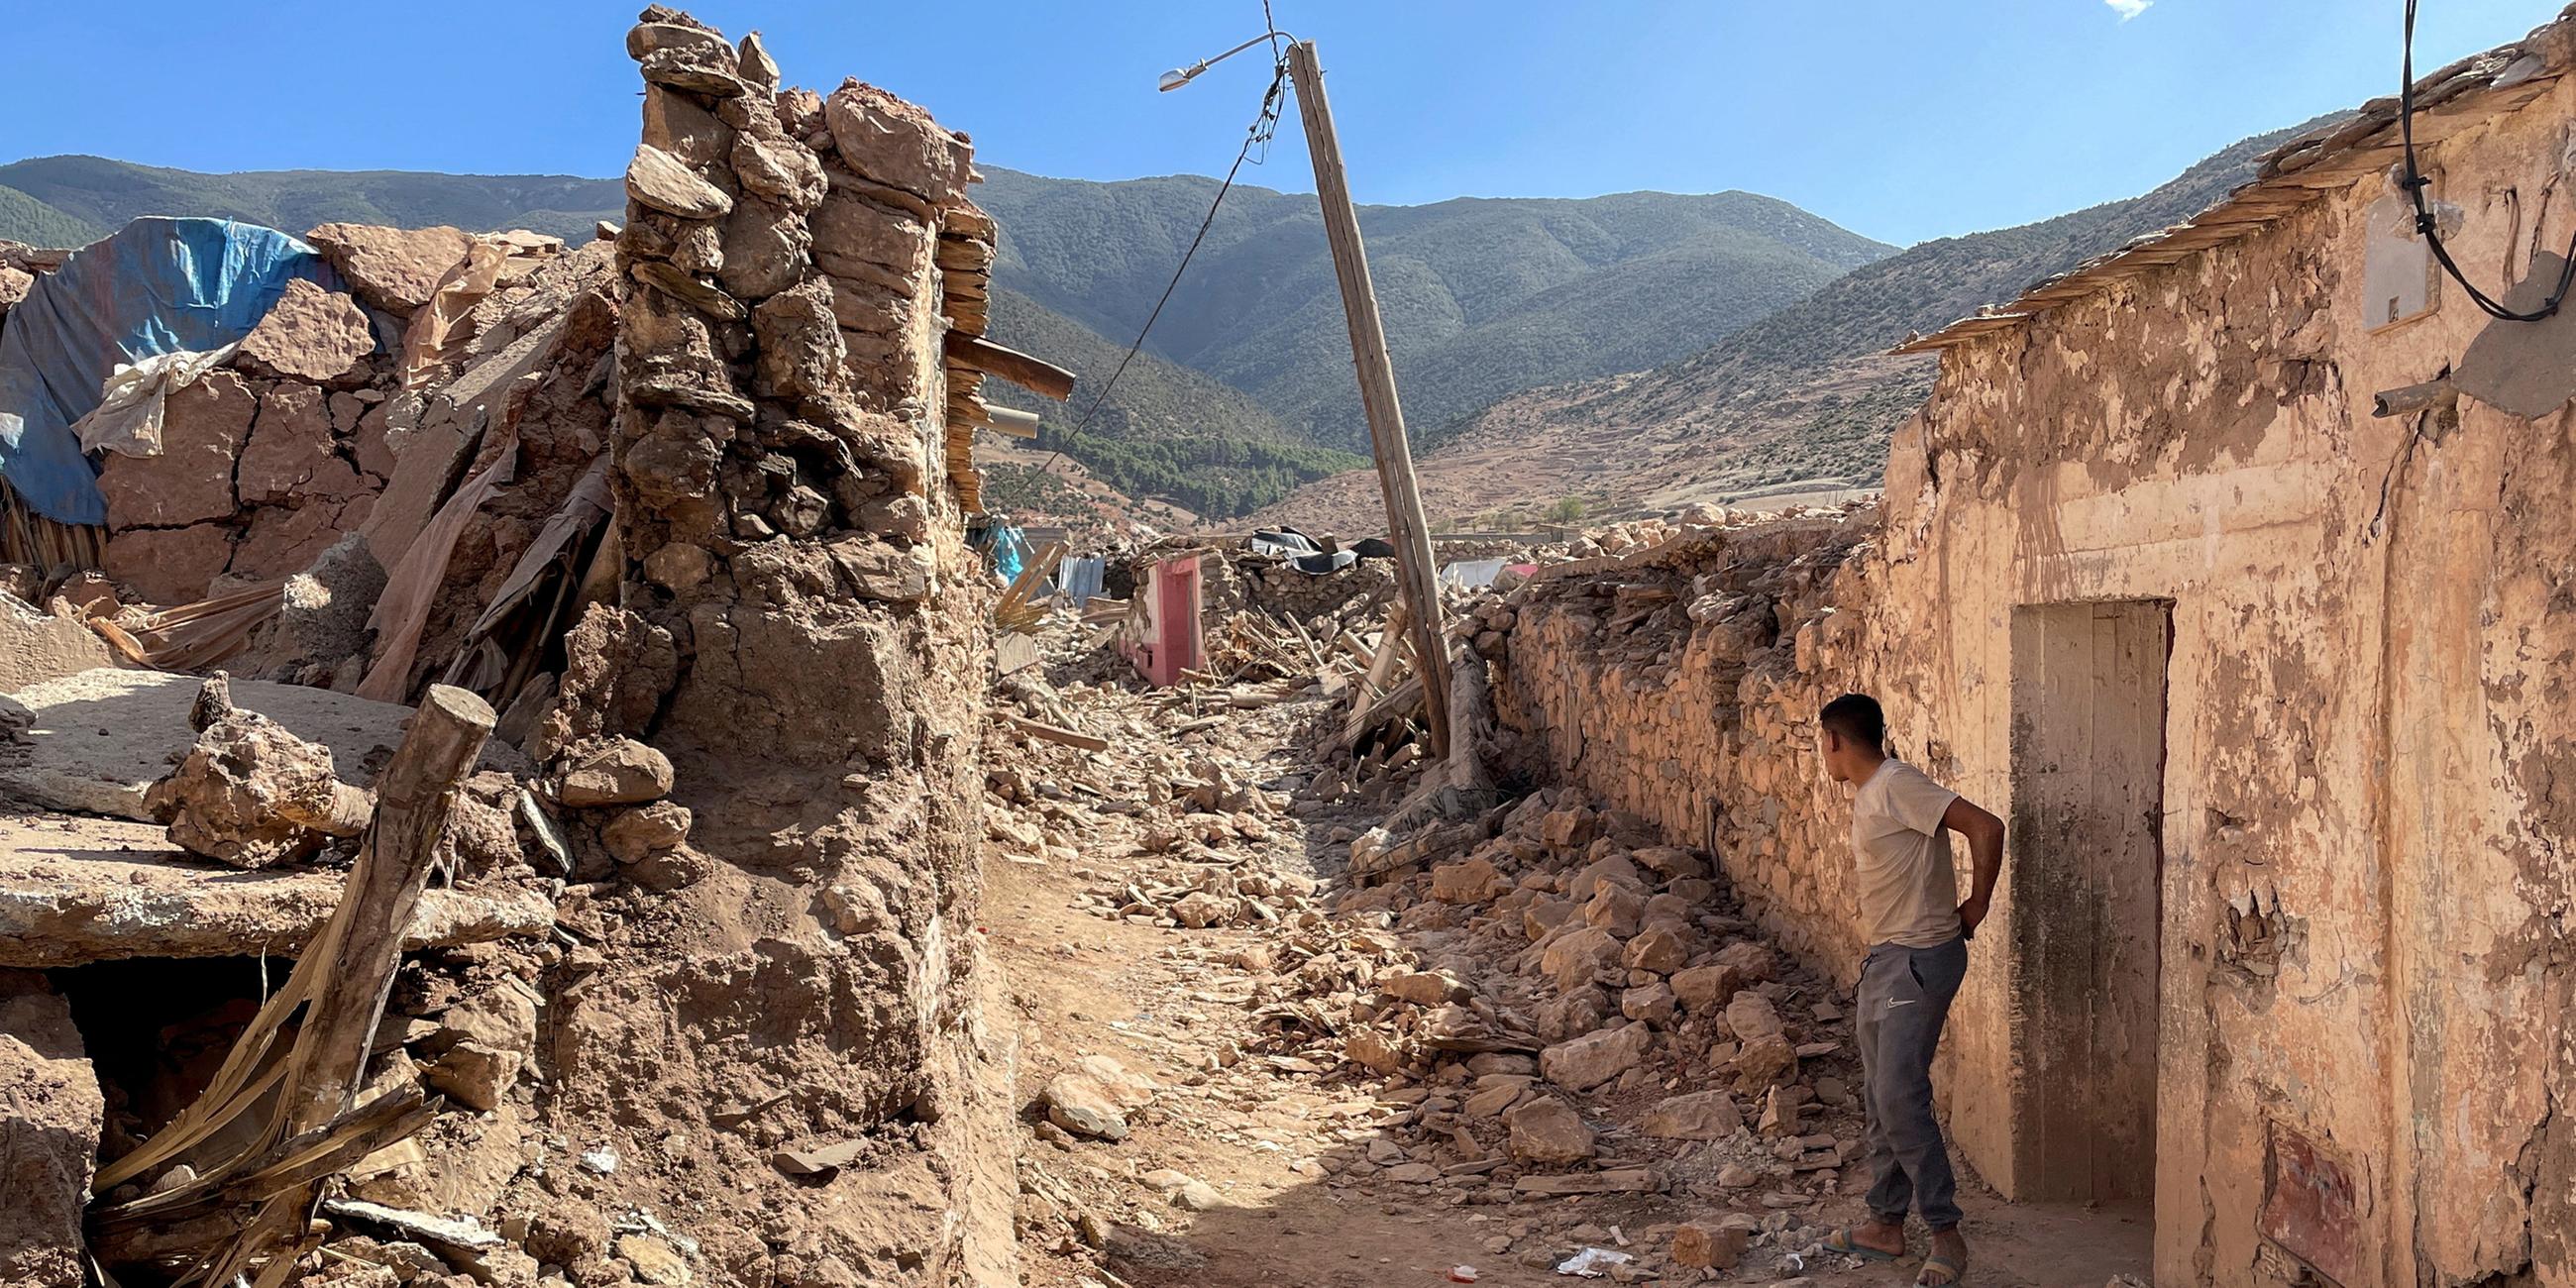 Beschädigte Häuser in Tafeghaghte, einem abgelegenen Dorf im Hohen Atlas-Gebirge. 